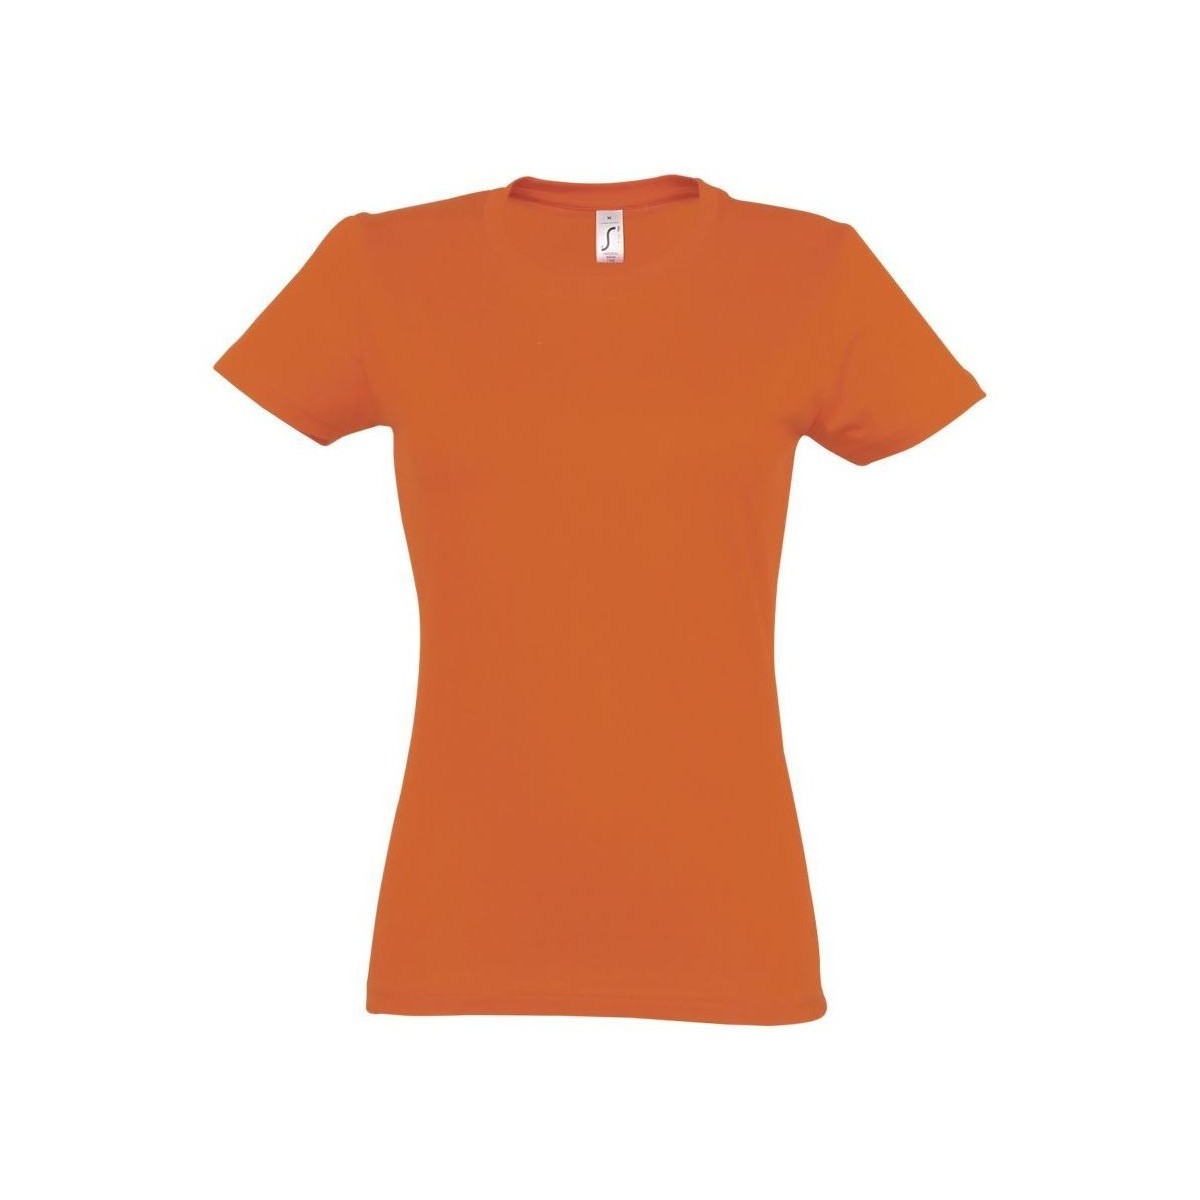 Îmbracaminte Femei Tricouri mânecă scurtă Sols IMPERIAL WOMEN - CAMISETA MUJER portocaliu